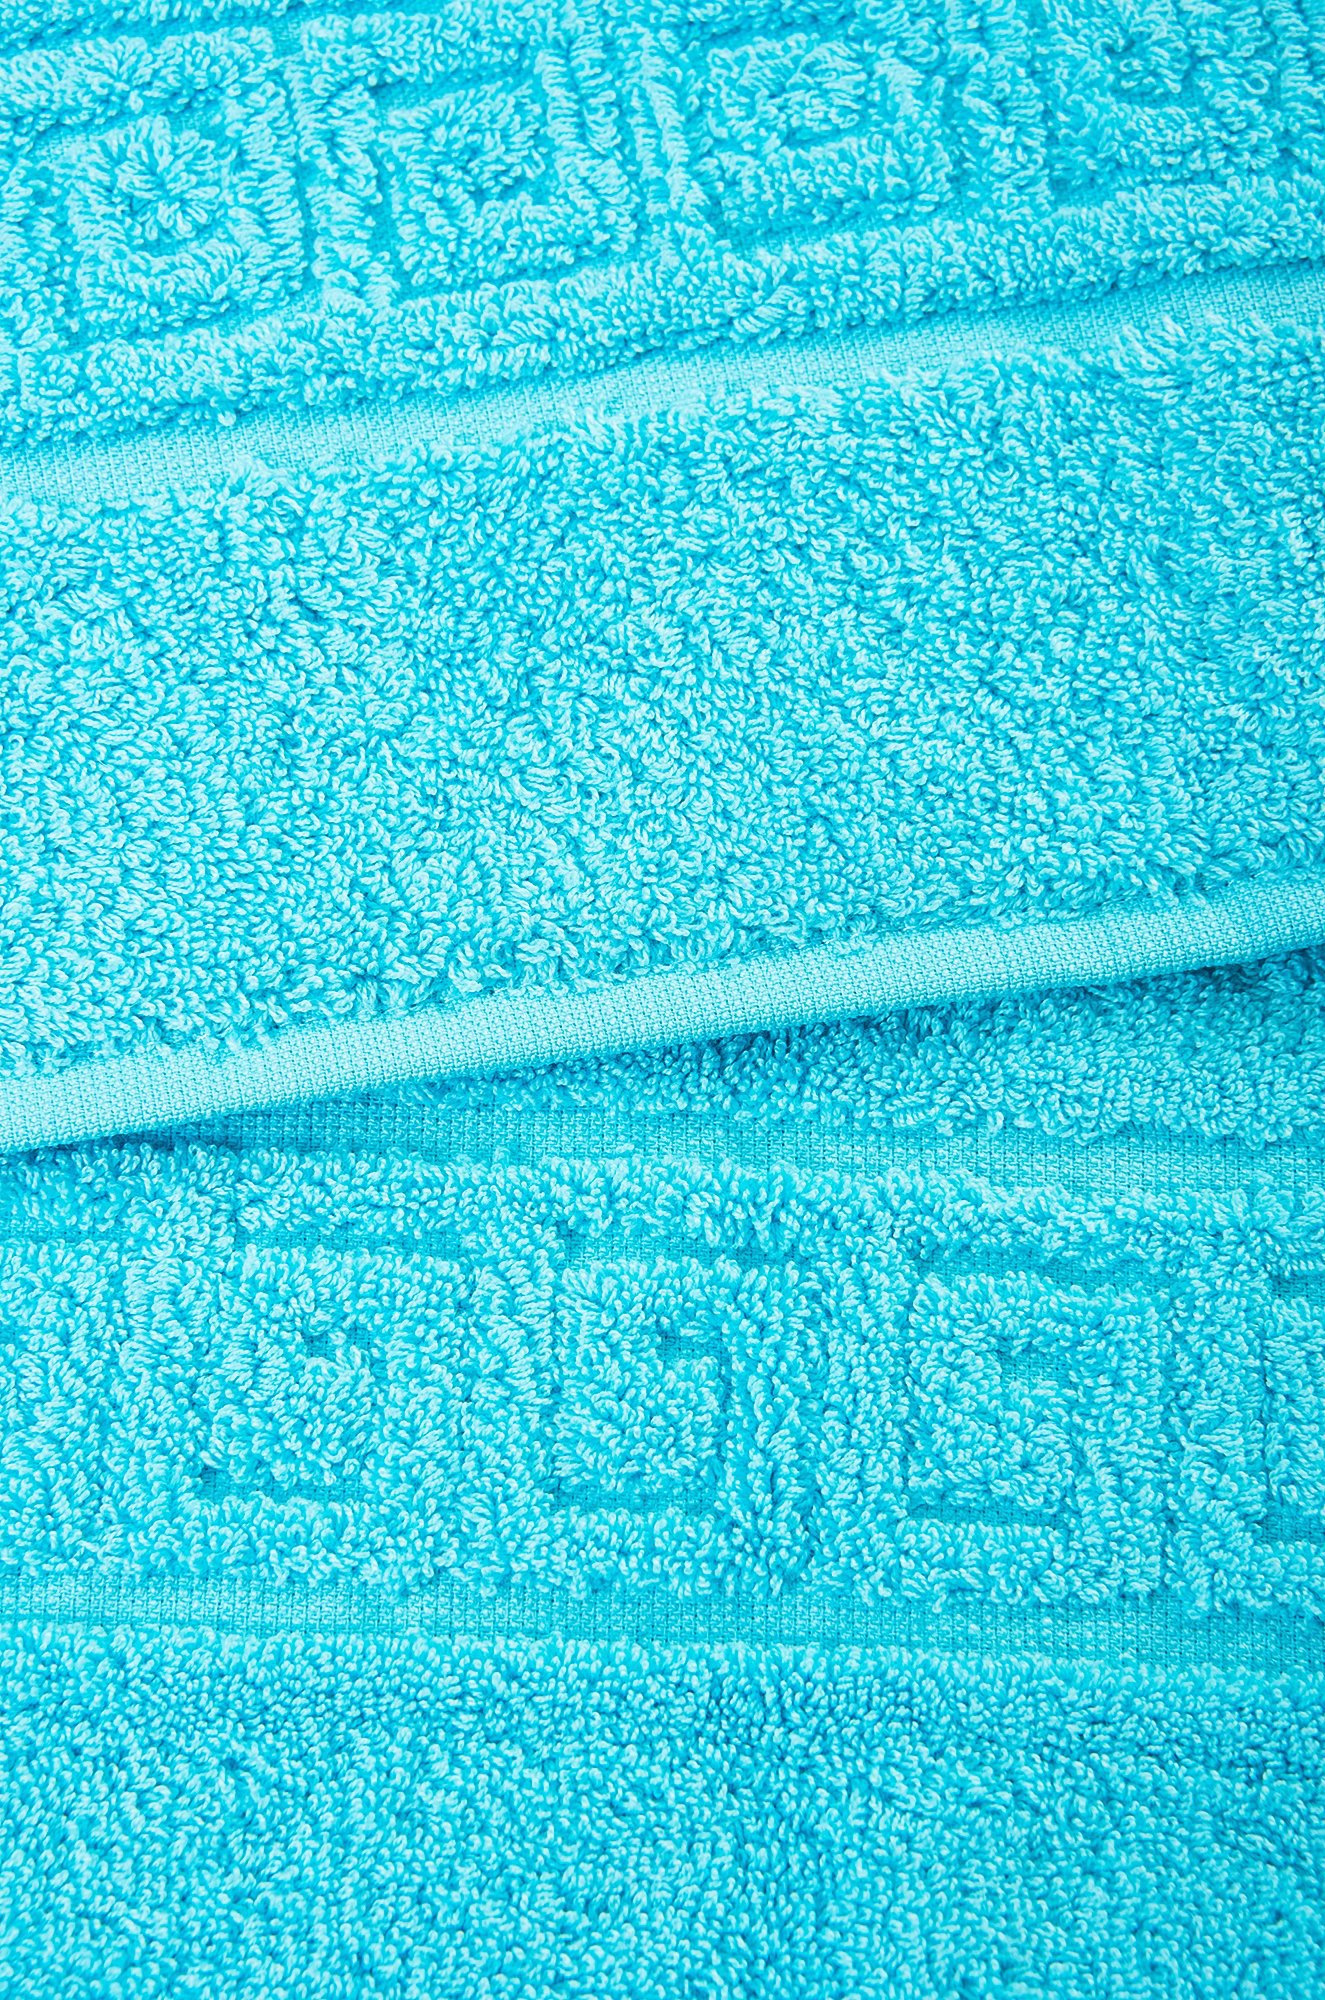 Махровое полотенце для ног 50Х70 Вышневолоцкий текстиль